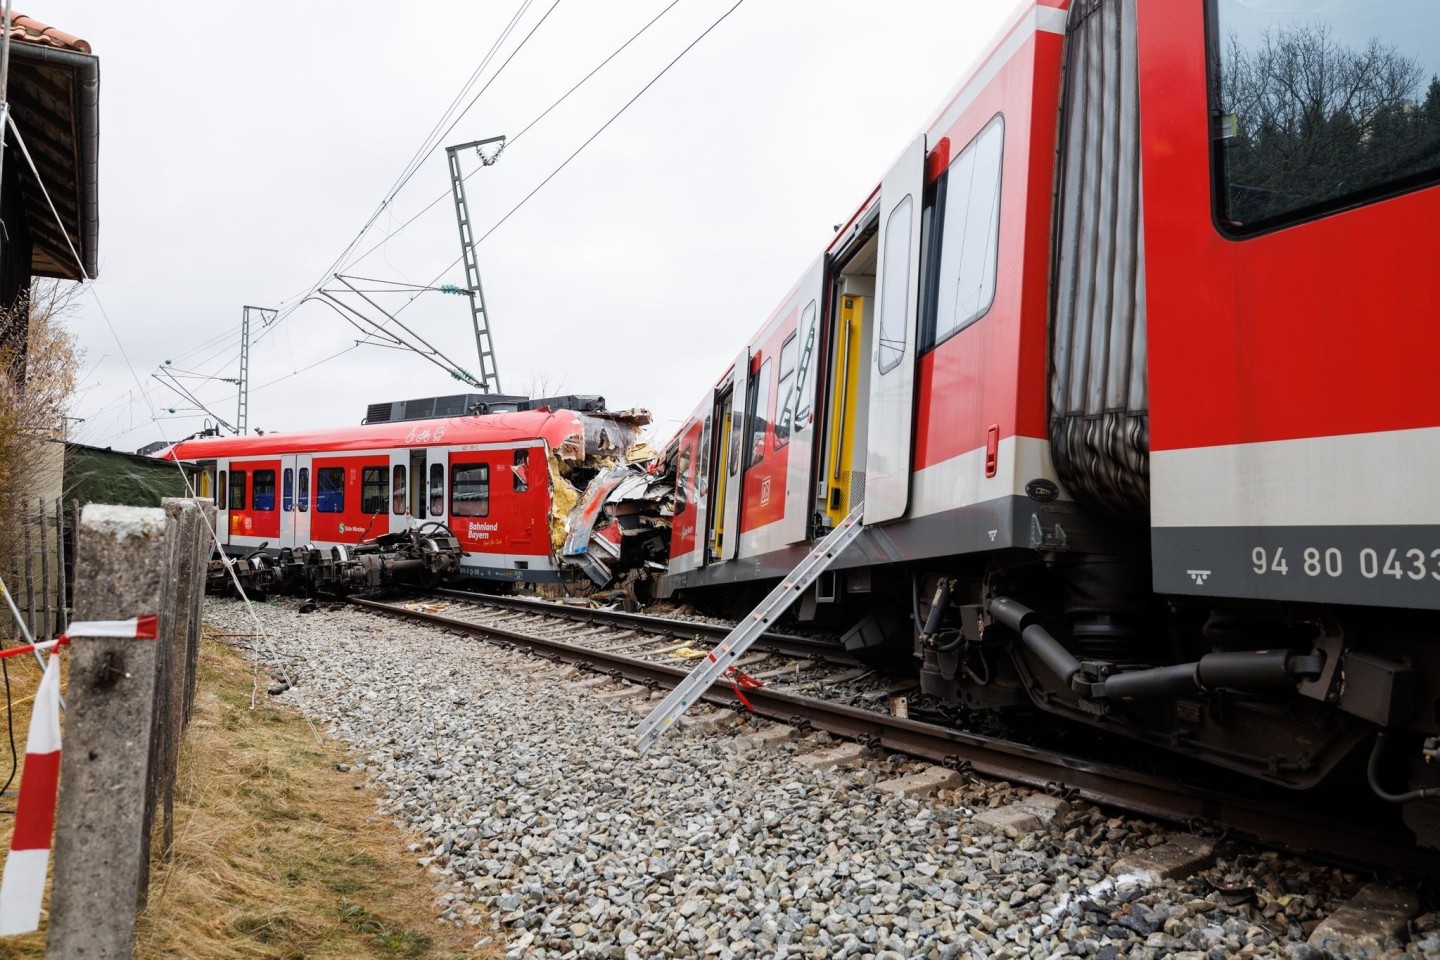 Zwei aufeinandergeprallte S-Bahnen an der Unfallstelle in der Nähe des Bahnhofes Ebenhausen-Schäftlarn.